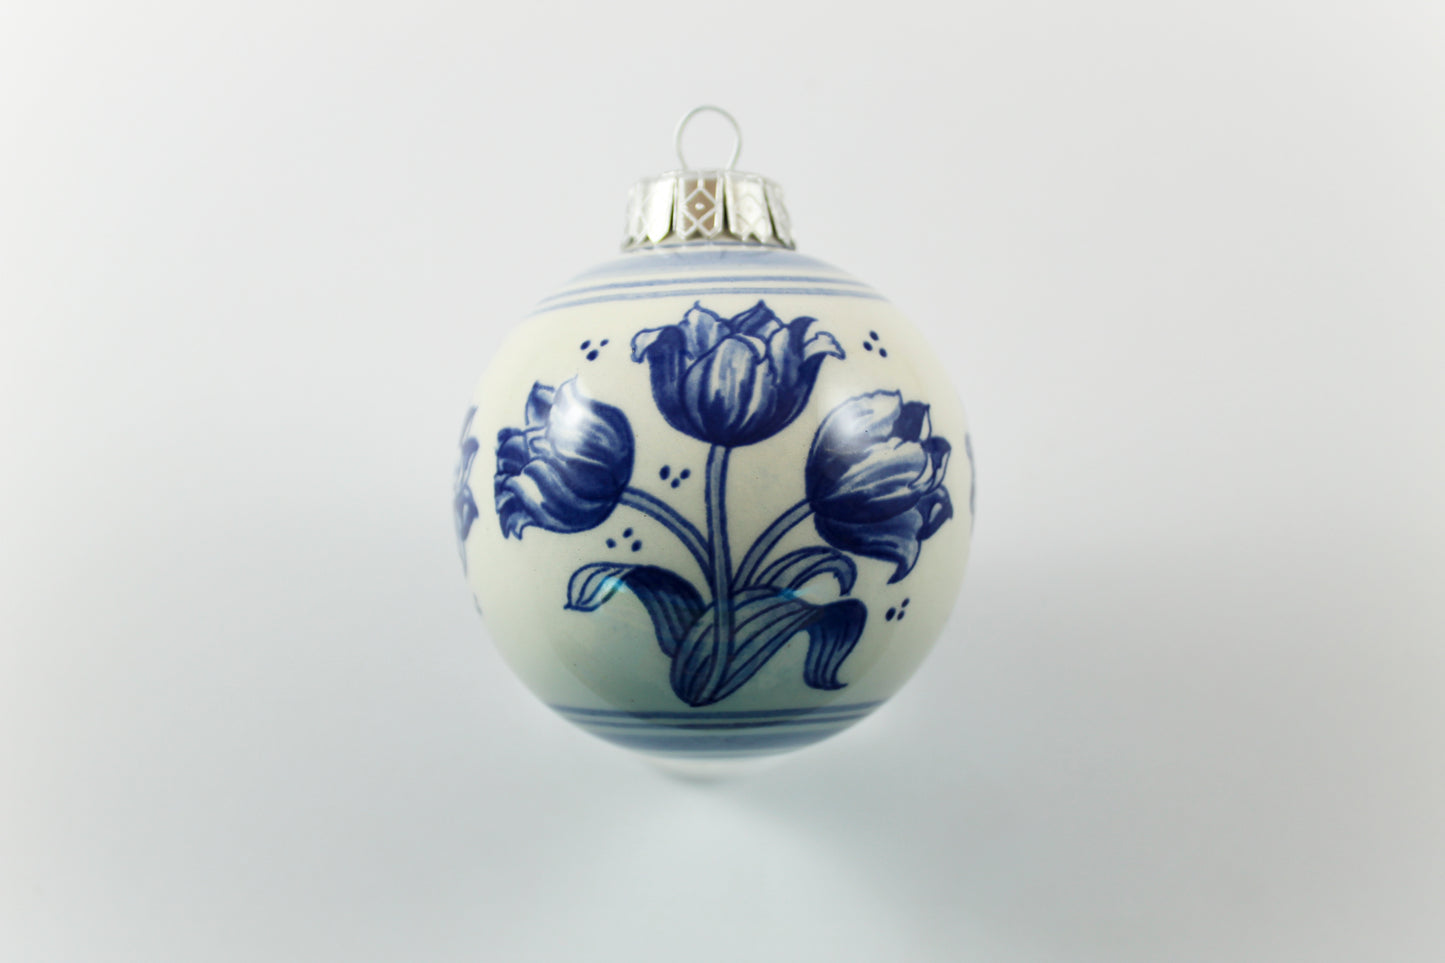 Amsterdam Tulip Museum Large Blue & White Ceramic Tulip Ornament